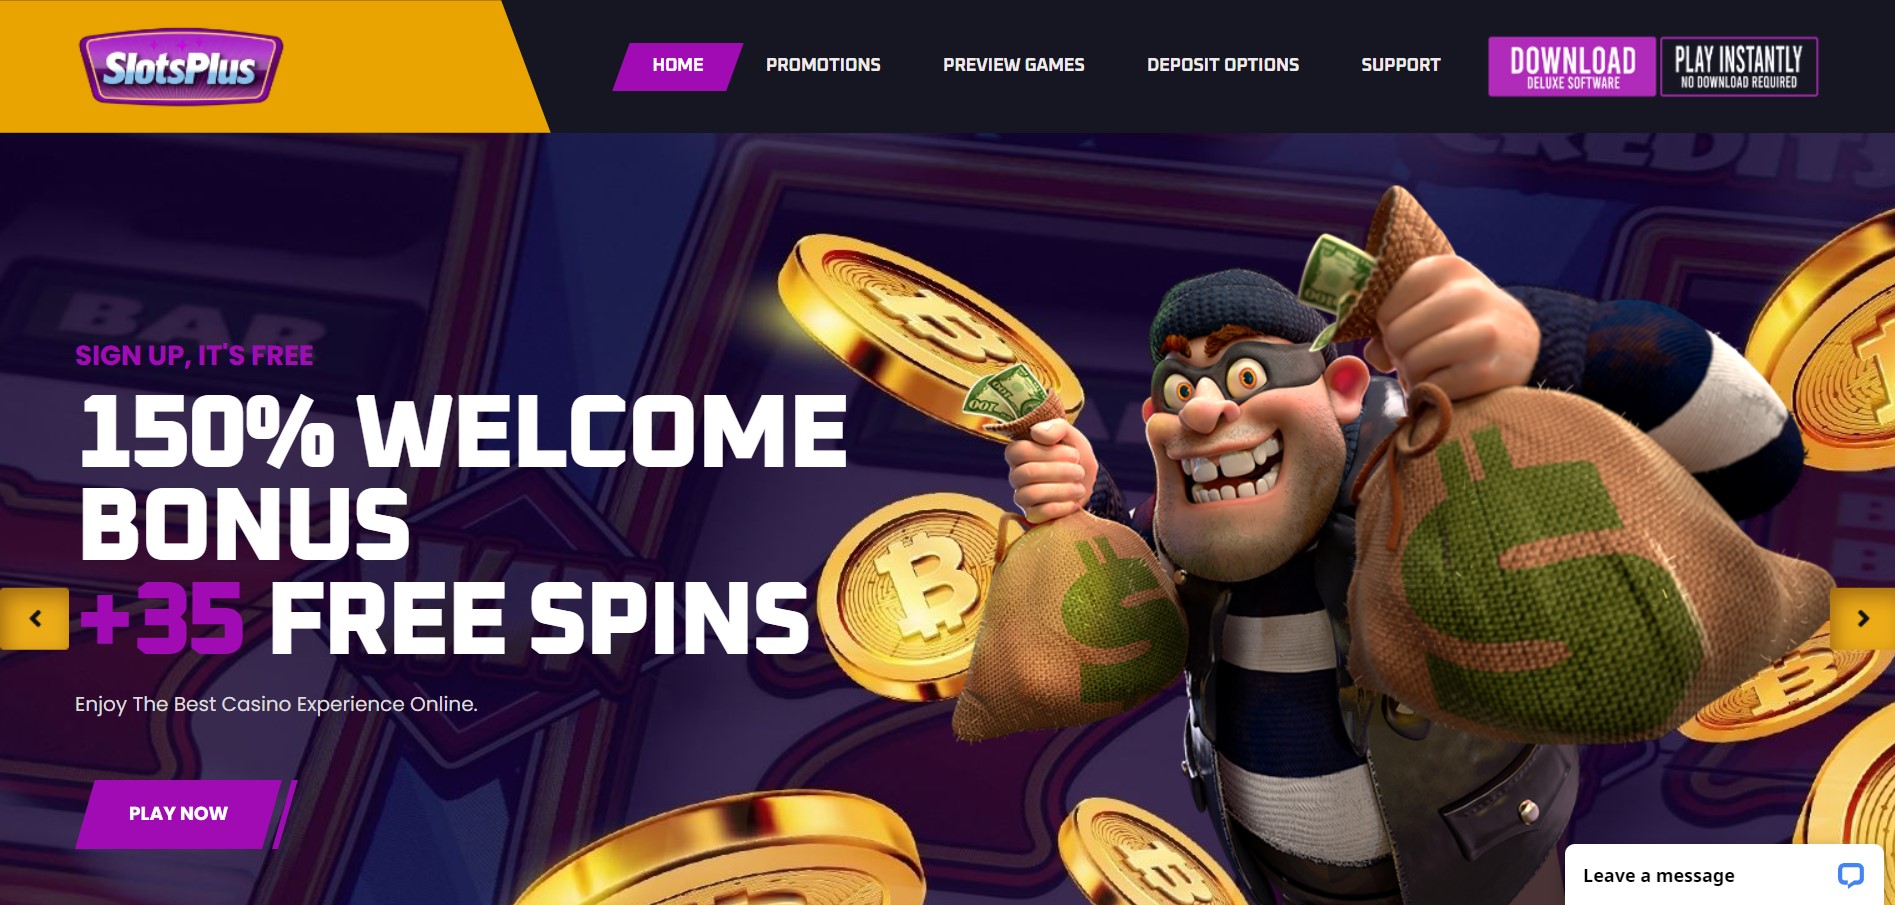 Slots Plus online casino review